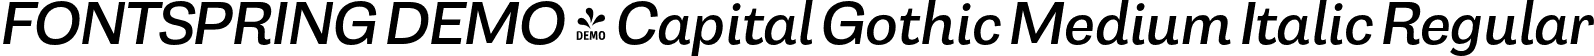 FONTSPRING DEMO - Capital Gothic Medium Italic Regular font - Fontspring-DEMO-capitalgothic-mediumitalic.otf